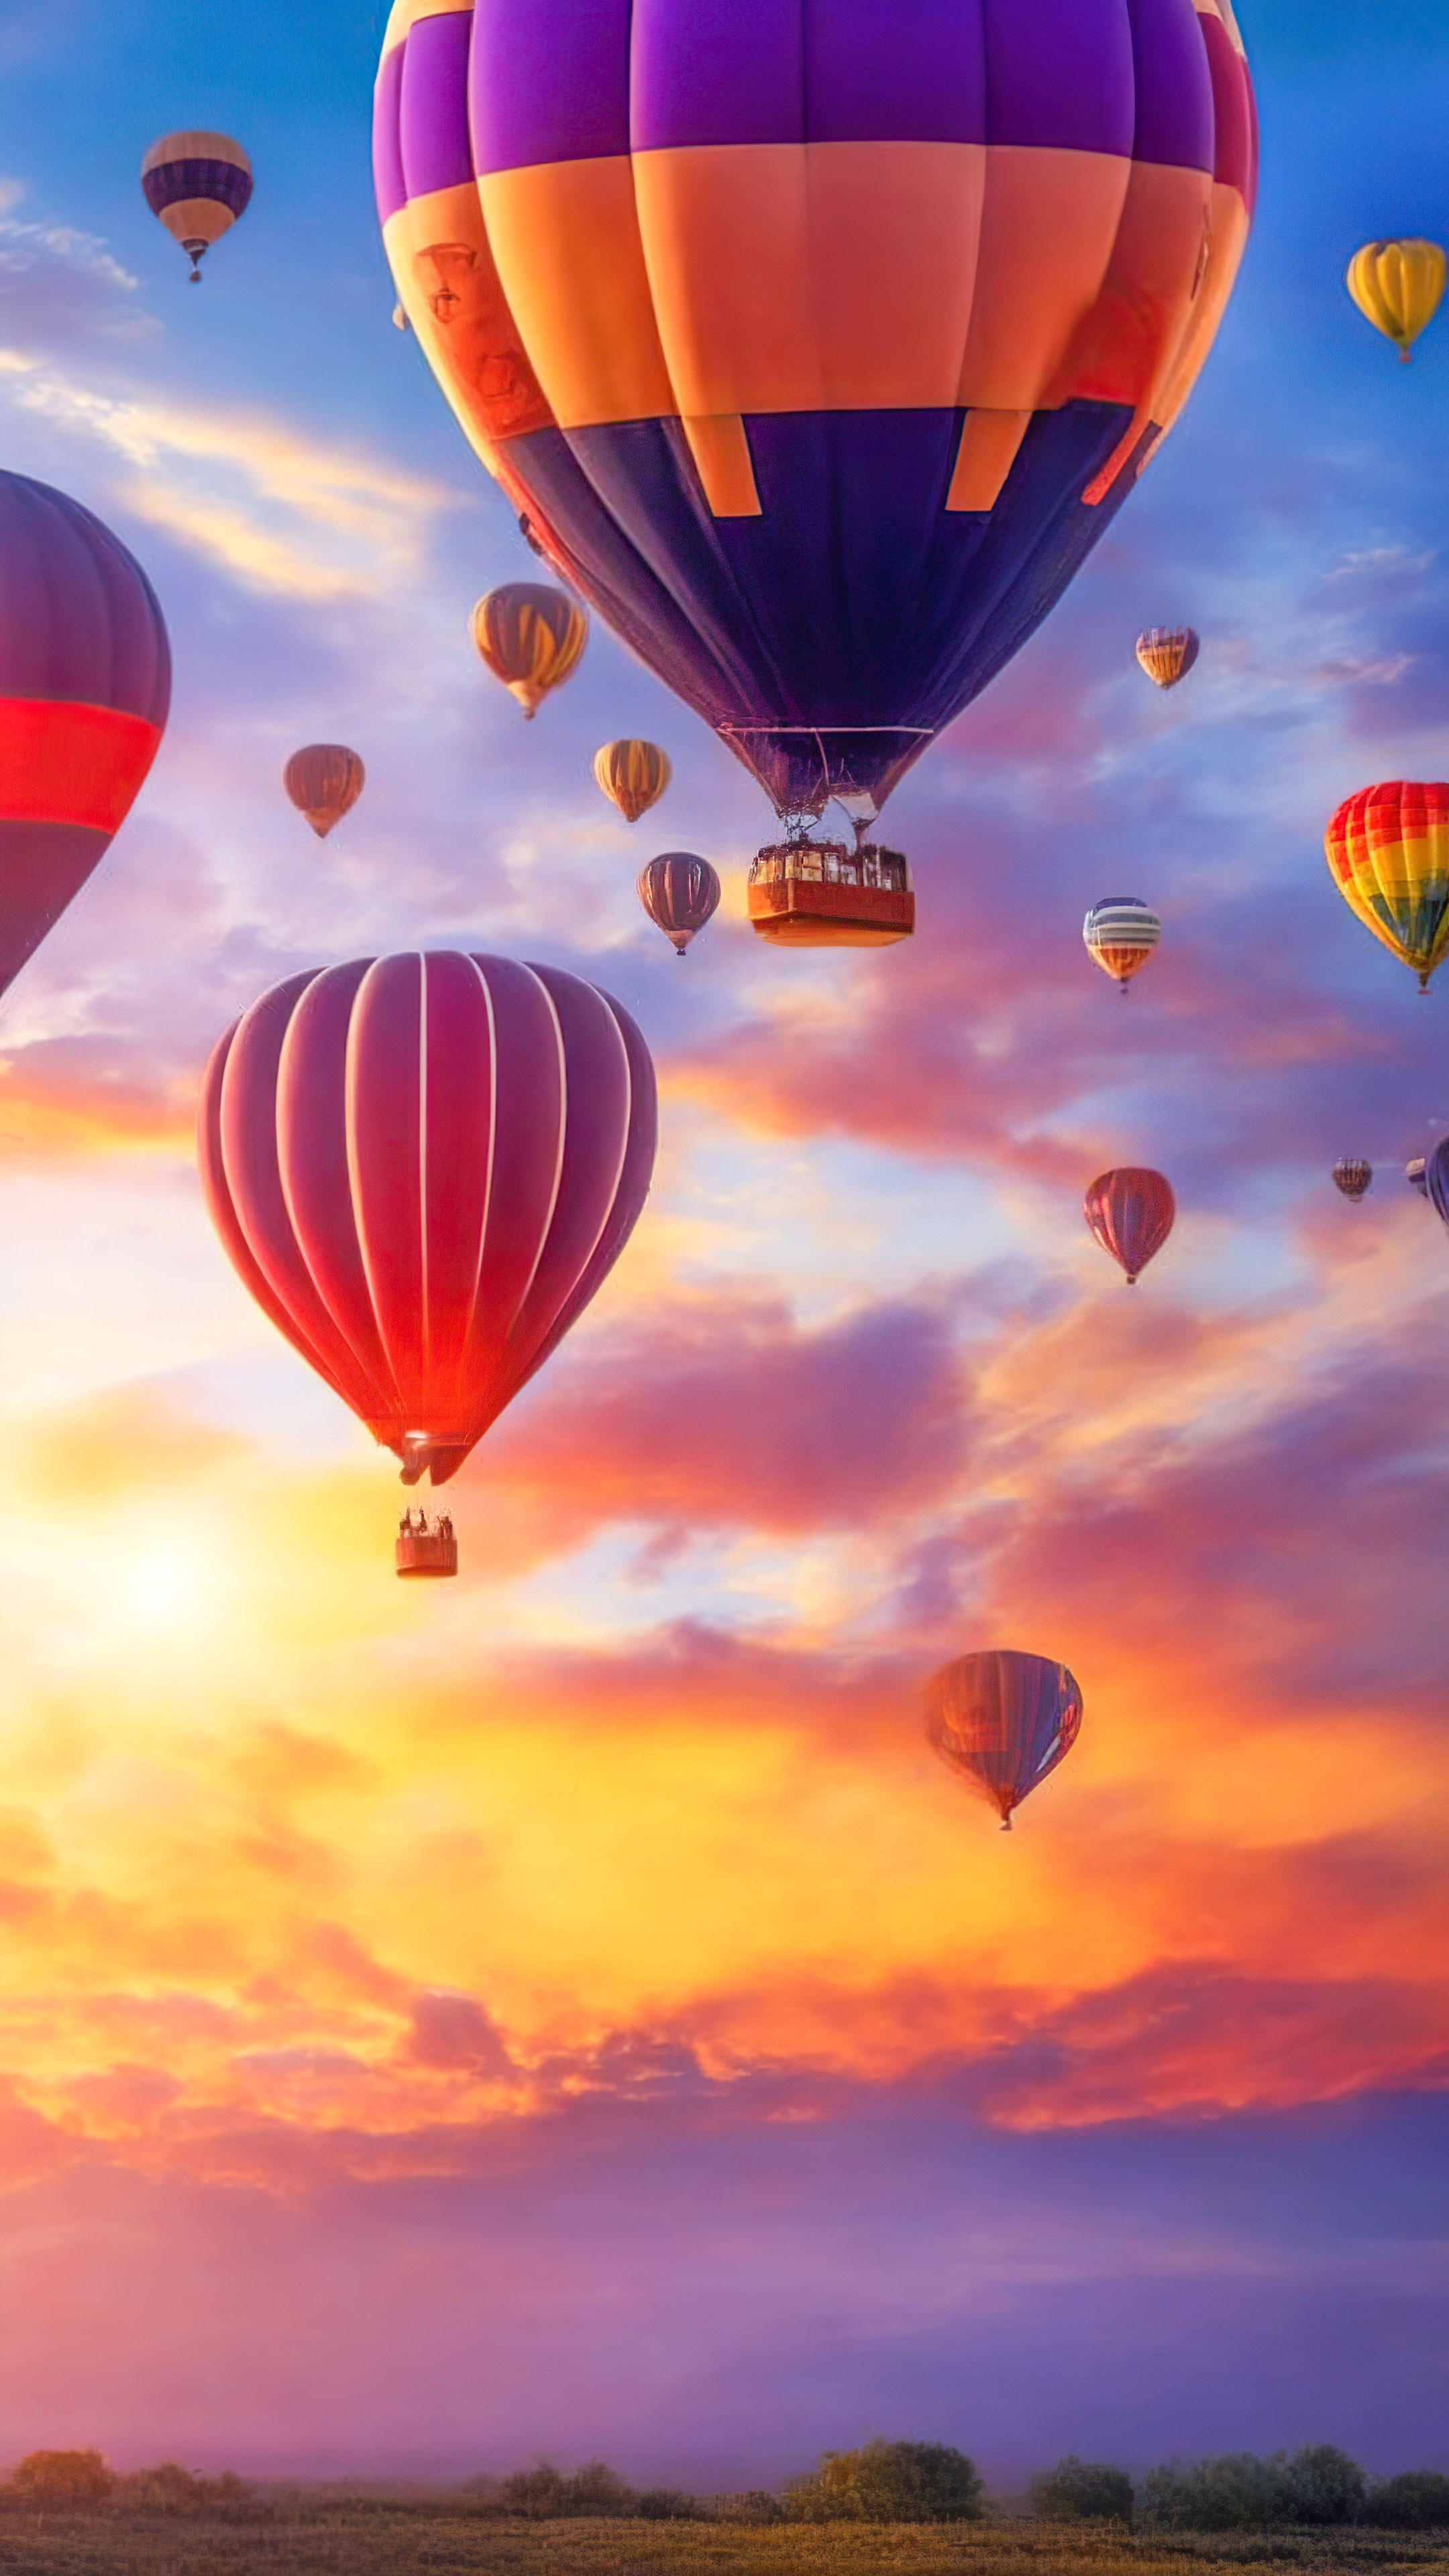 Perdez-vous dans la magie d'un ciel fantaisiste et rêveur rempli de montgolfières colorées flottantes au lever du soleil, avec notre fond d'écran de nuages et de ciel.